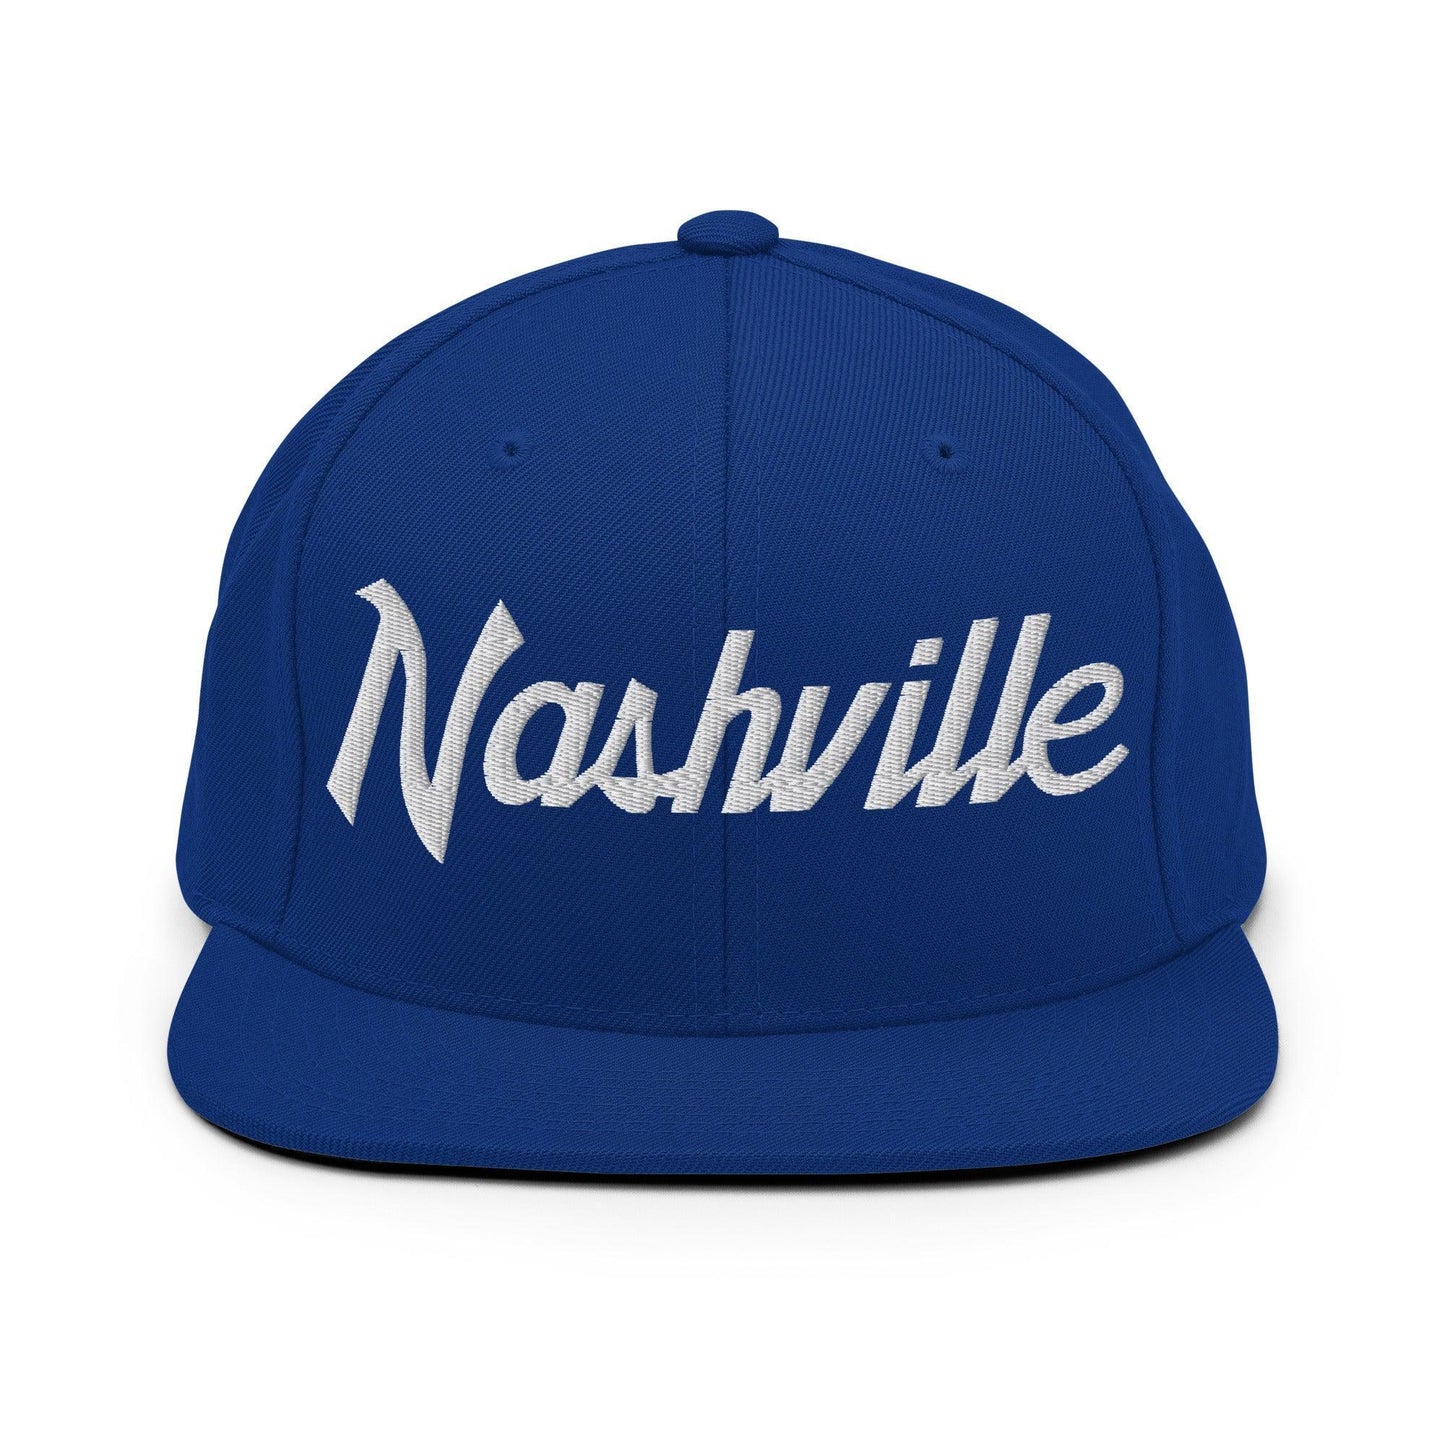 Nashville Script Snapback Hat Royal Blue